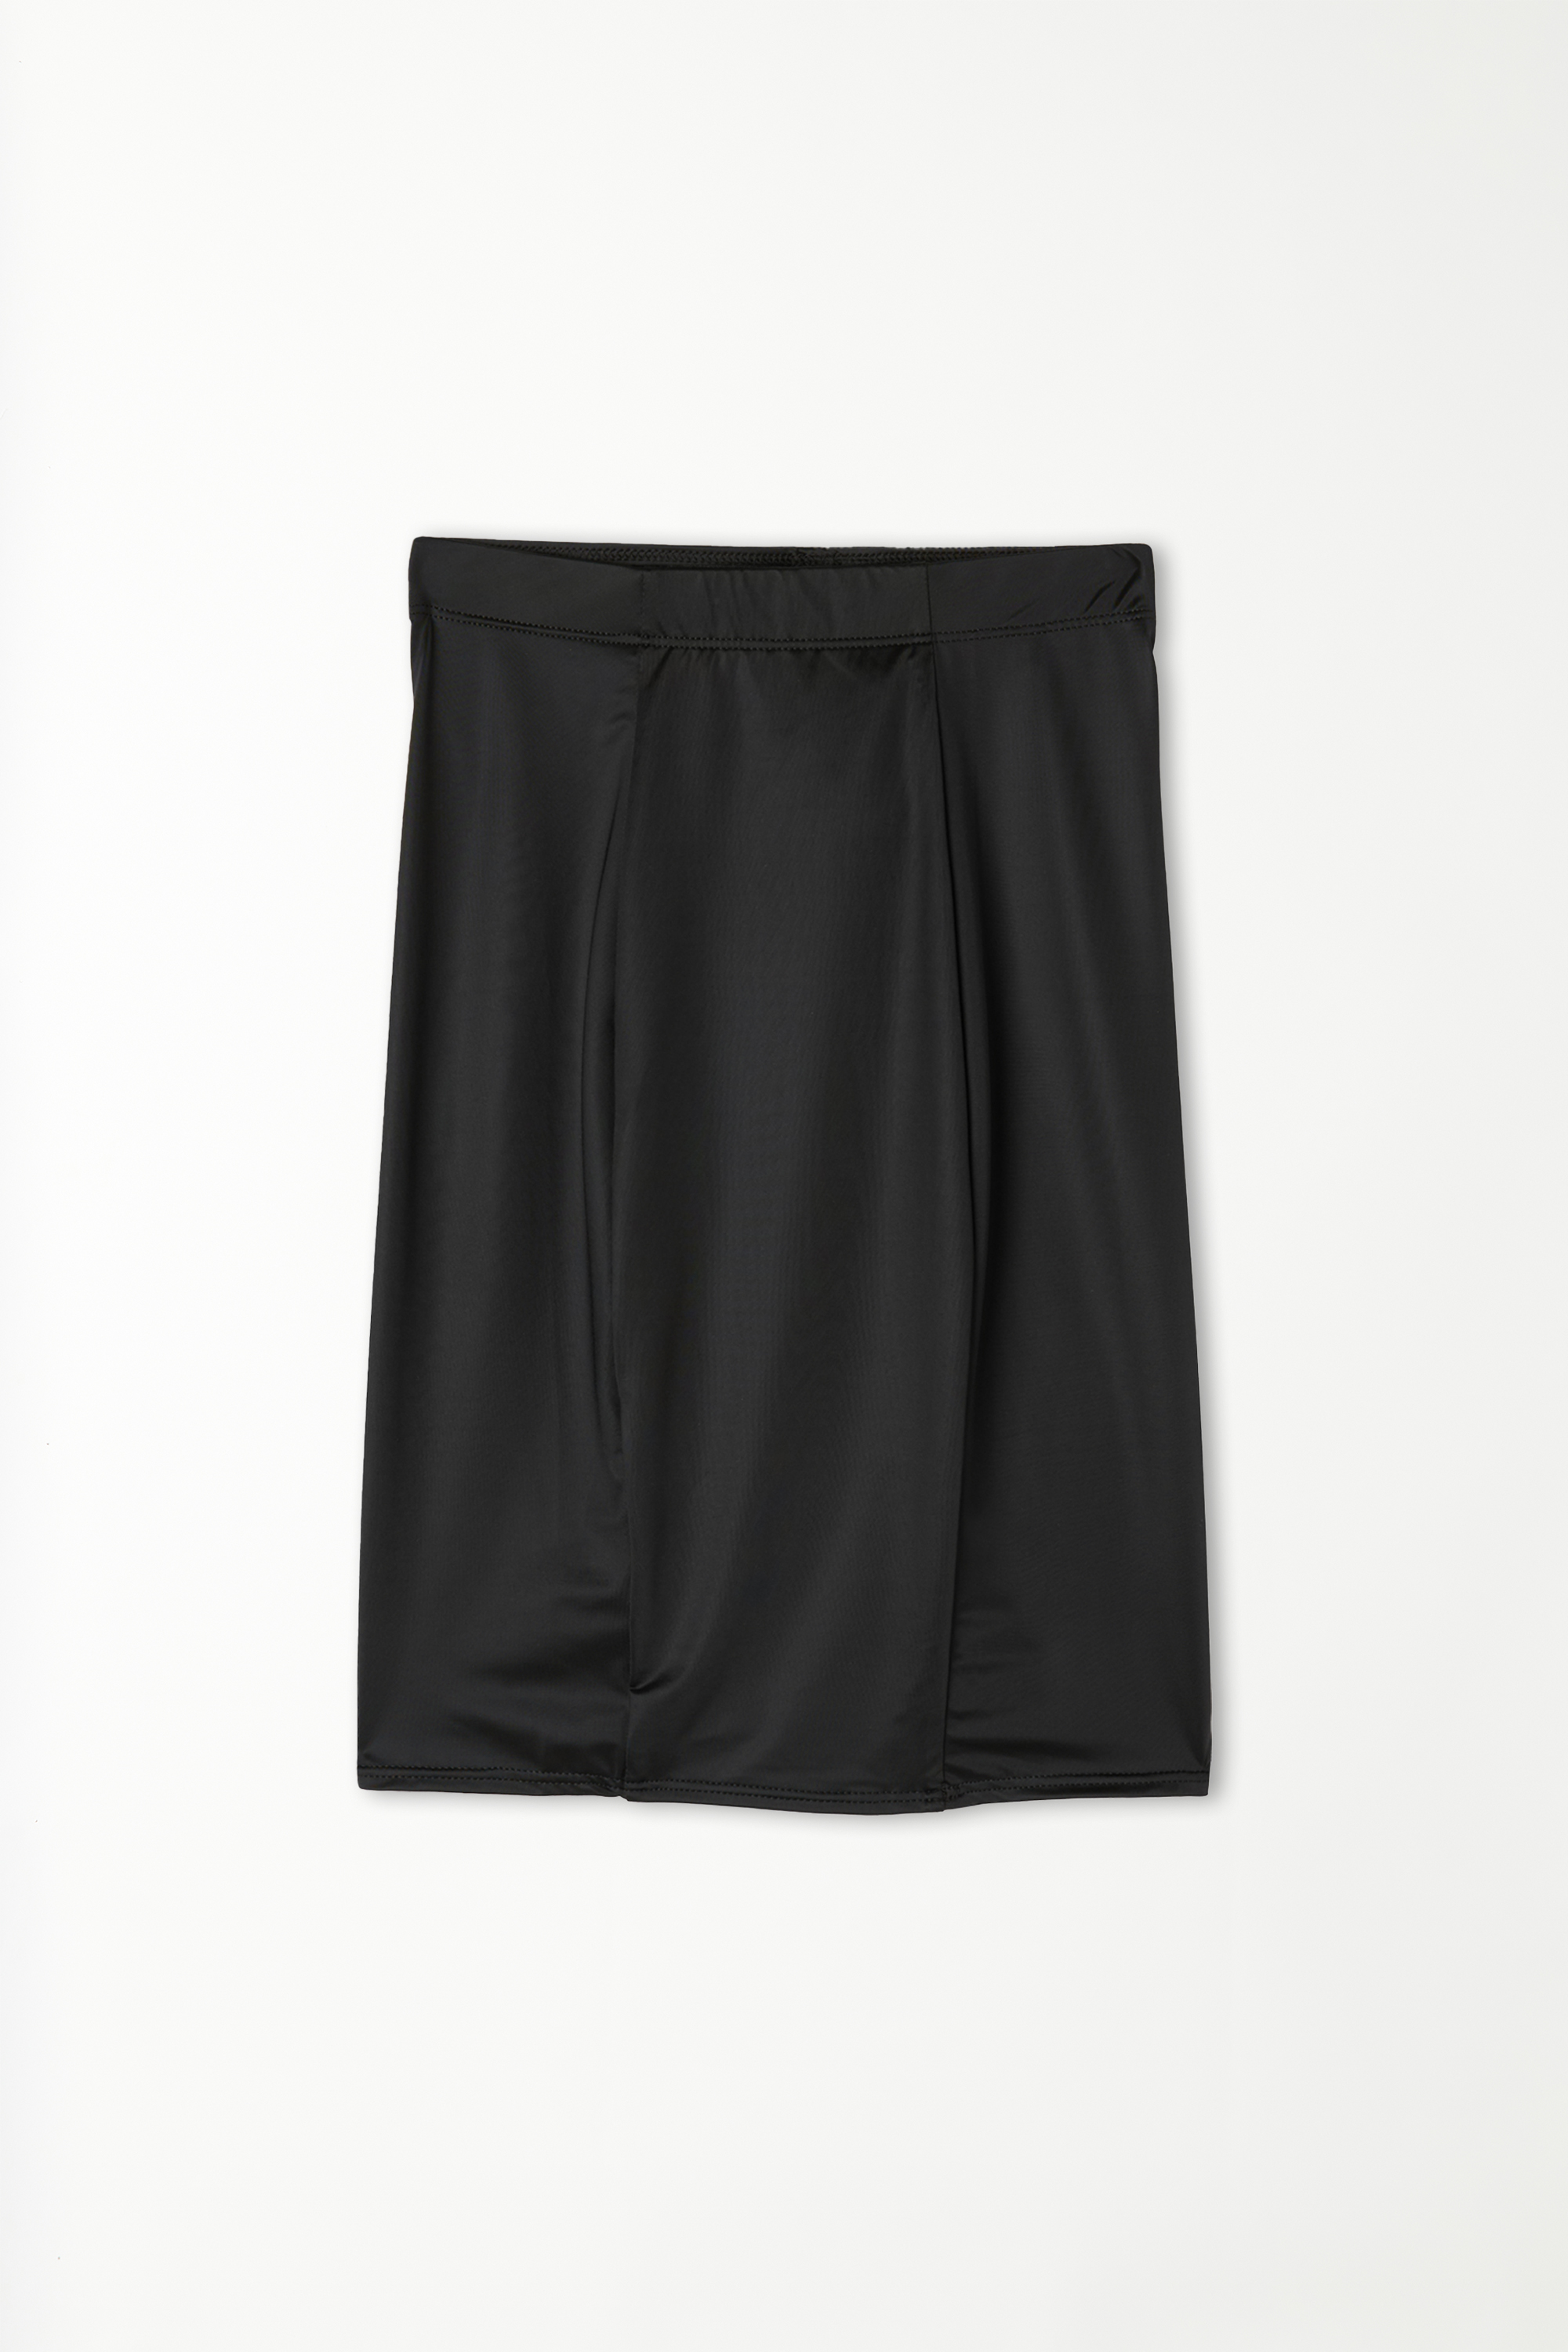 Ultralight Shaping High-Waist Underskirt